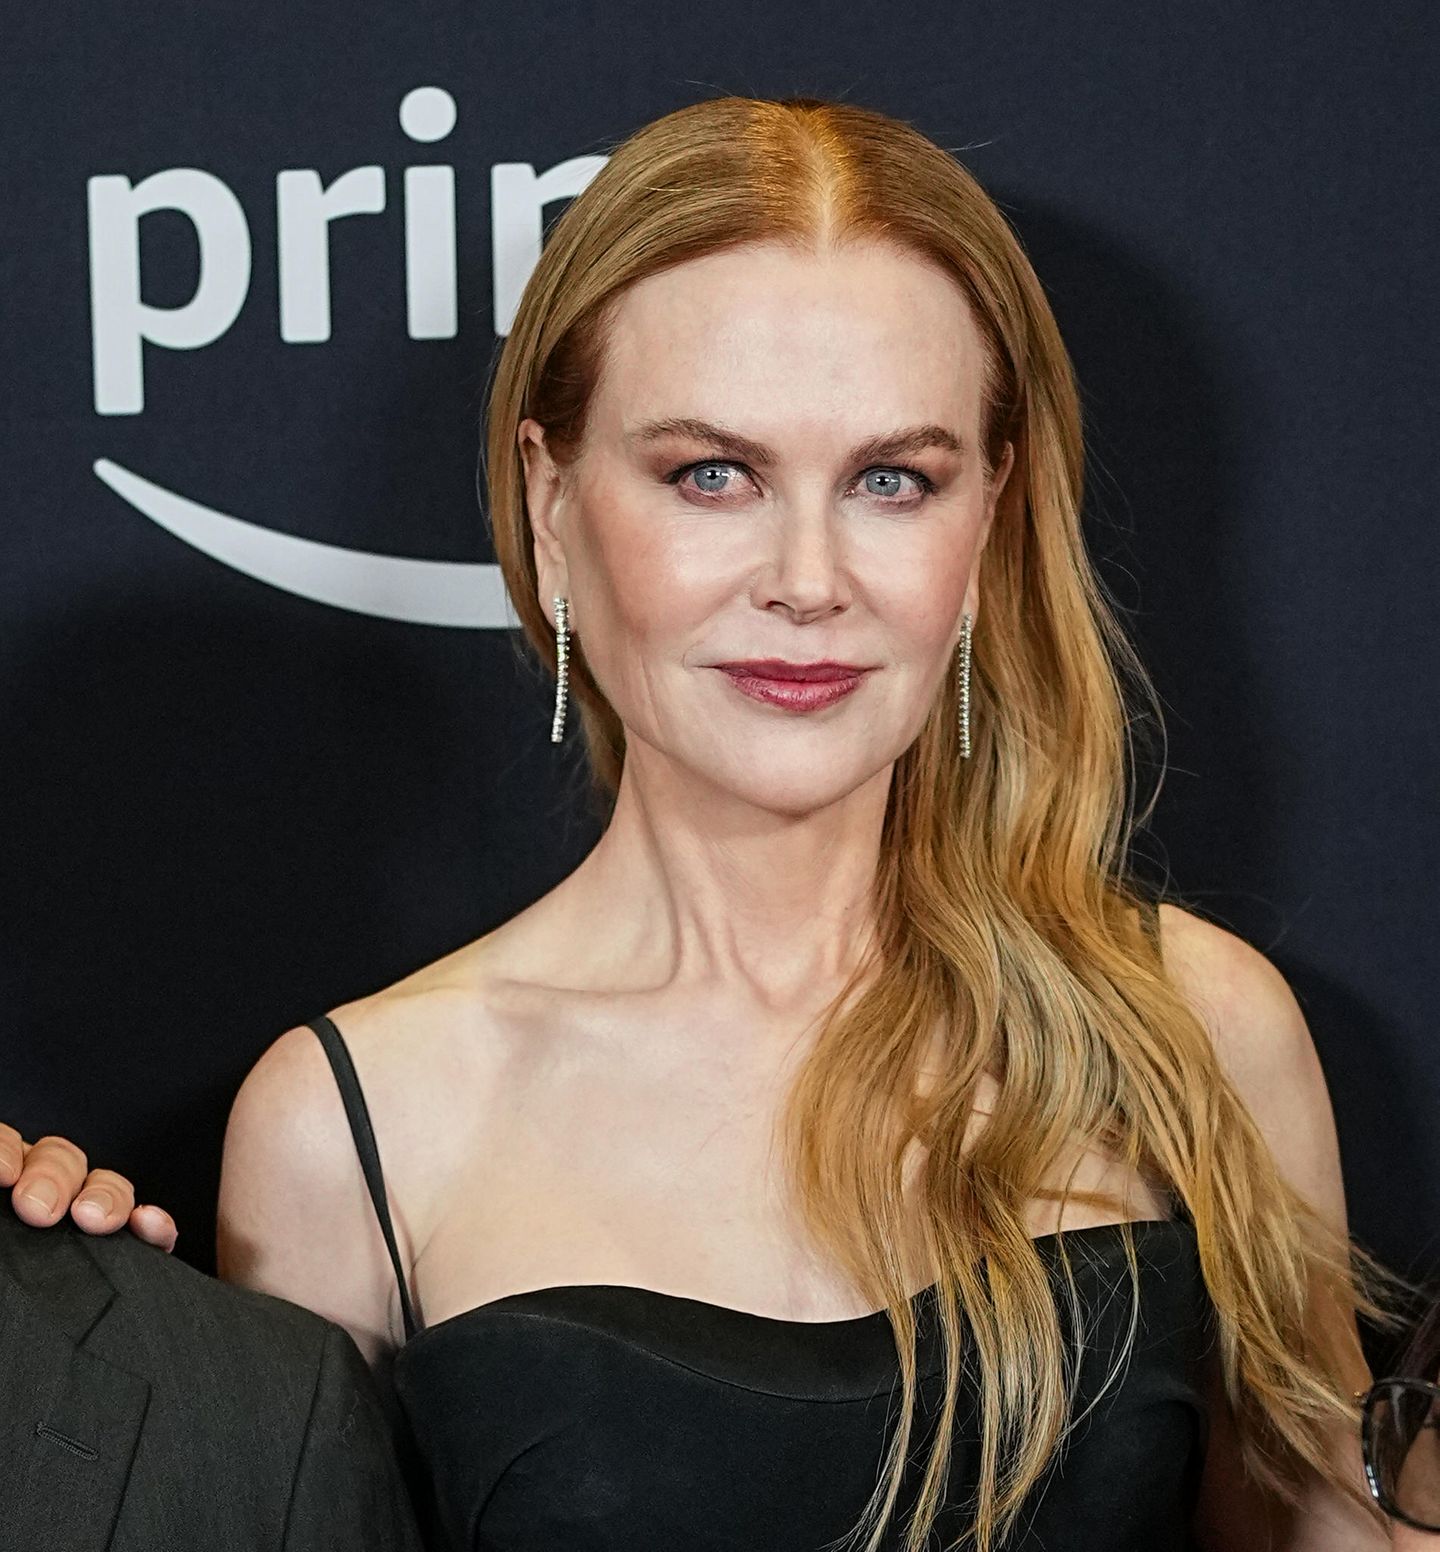 Nicole Kidman, wie wir sie kennen: Erdbeerblond mit lockigem Haar. Seit ihrem Durchbruch 1980 trägt die Schauspielerin ihre charakteristischen roten Haare mal kürzer, mal länger, hell oder dunkel. Doch nun wagt Kidman eine drastische Veränderung.